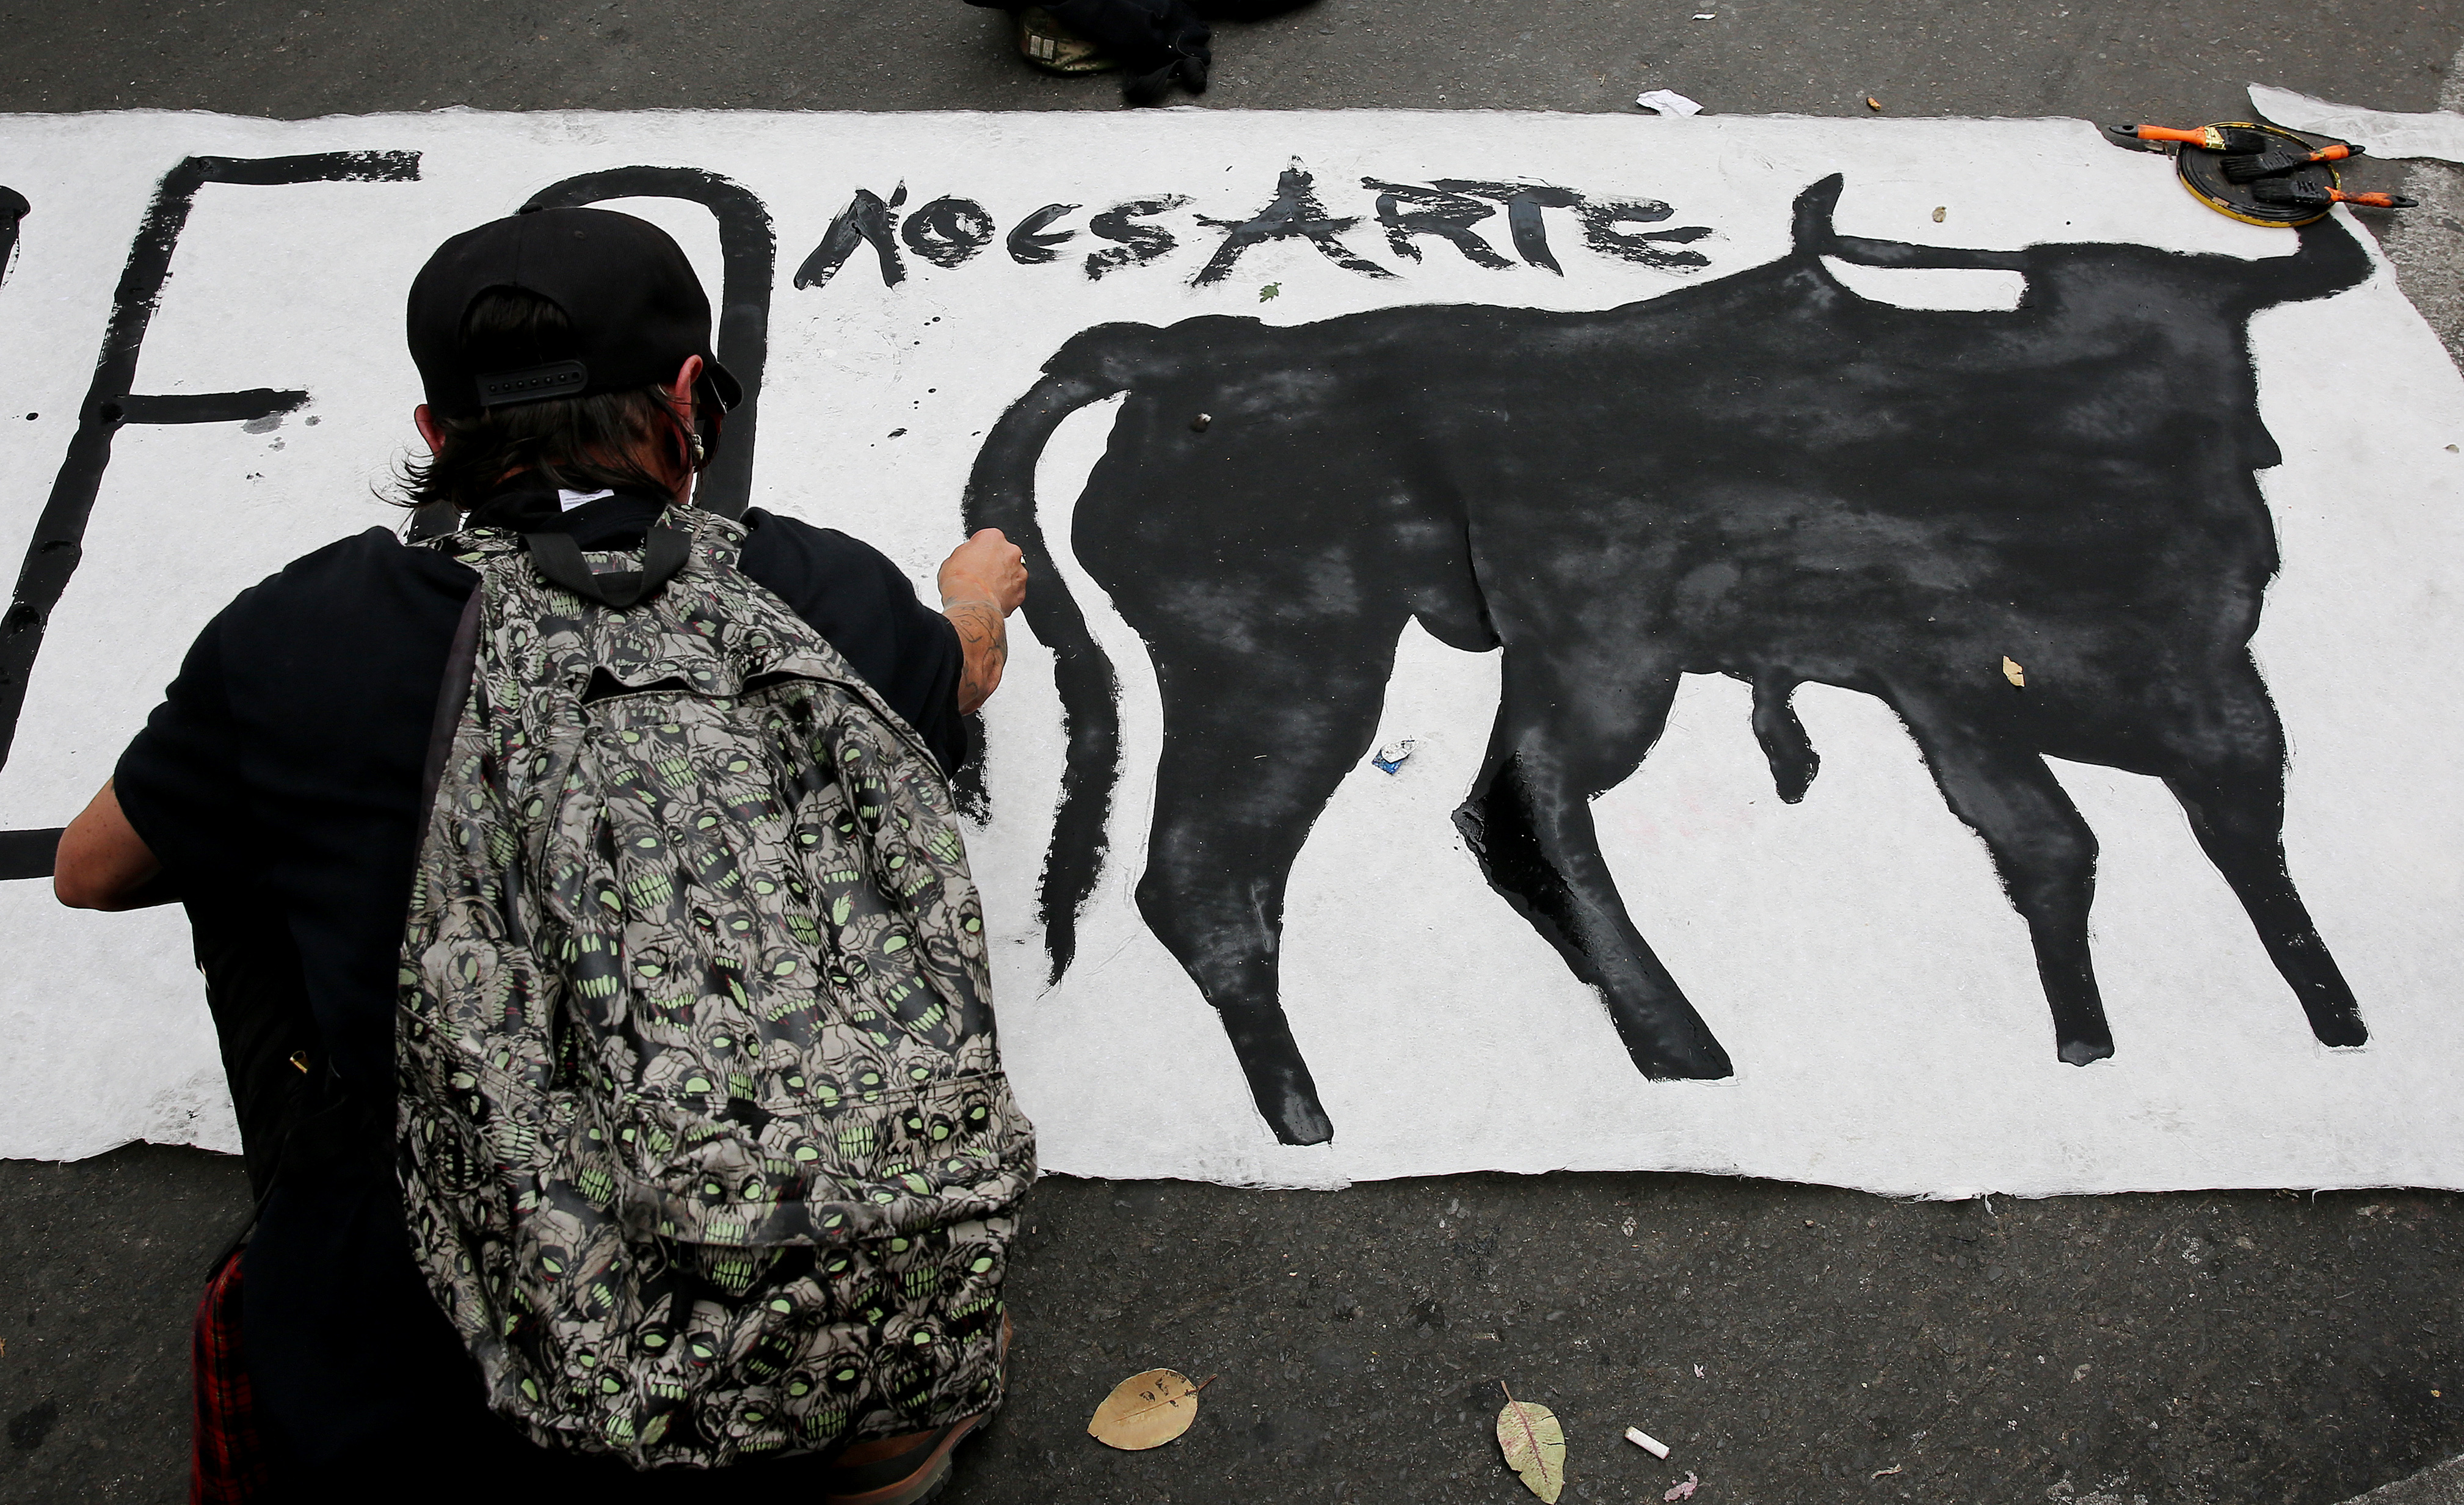 Cuáles son los estados de México que prohíben las corridas de toros